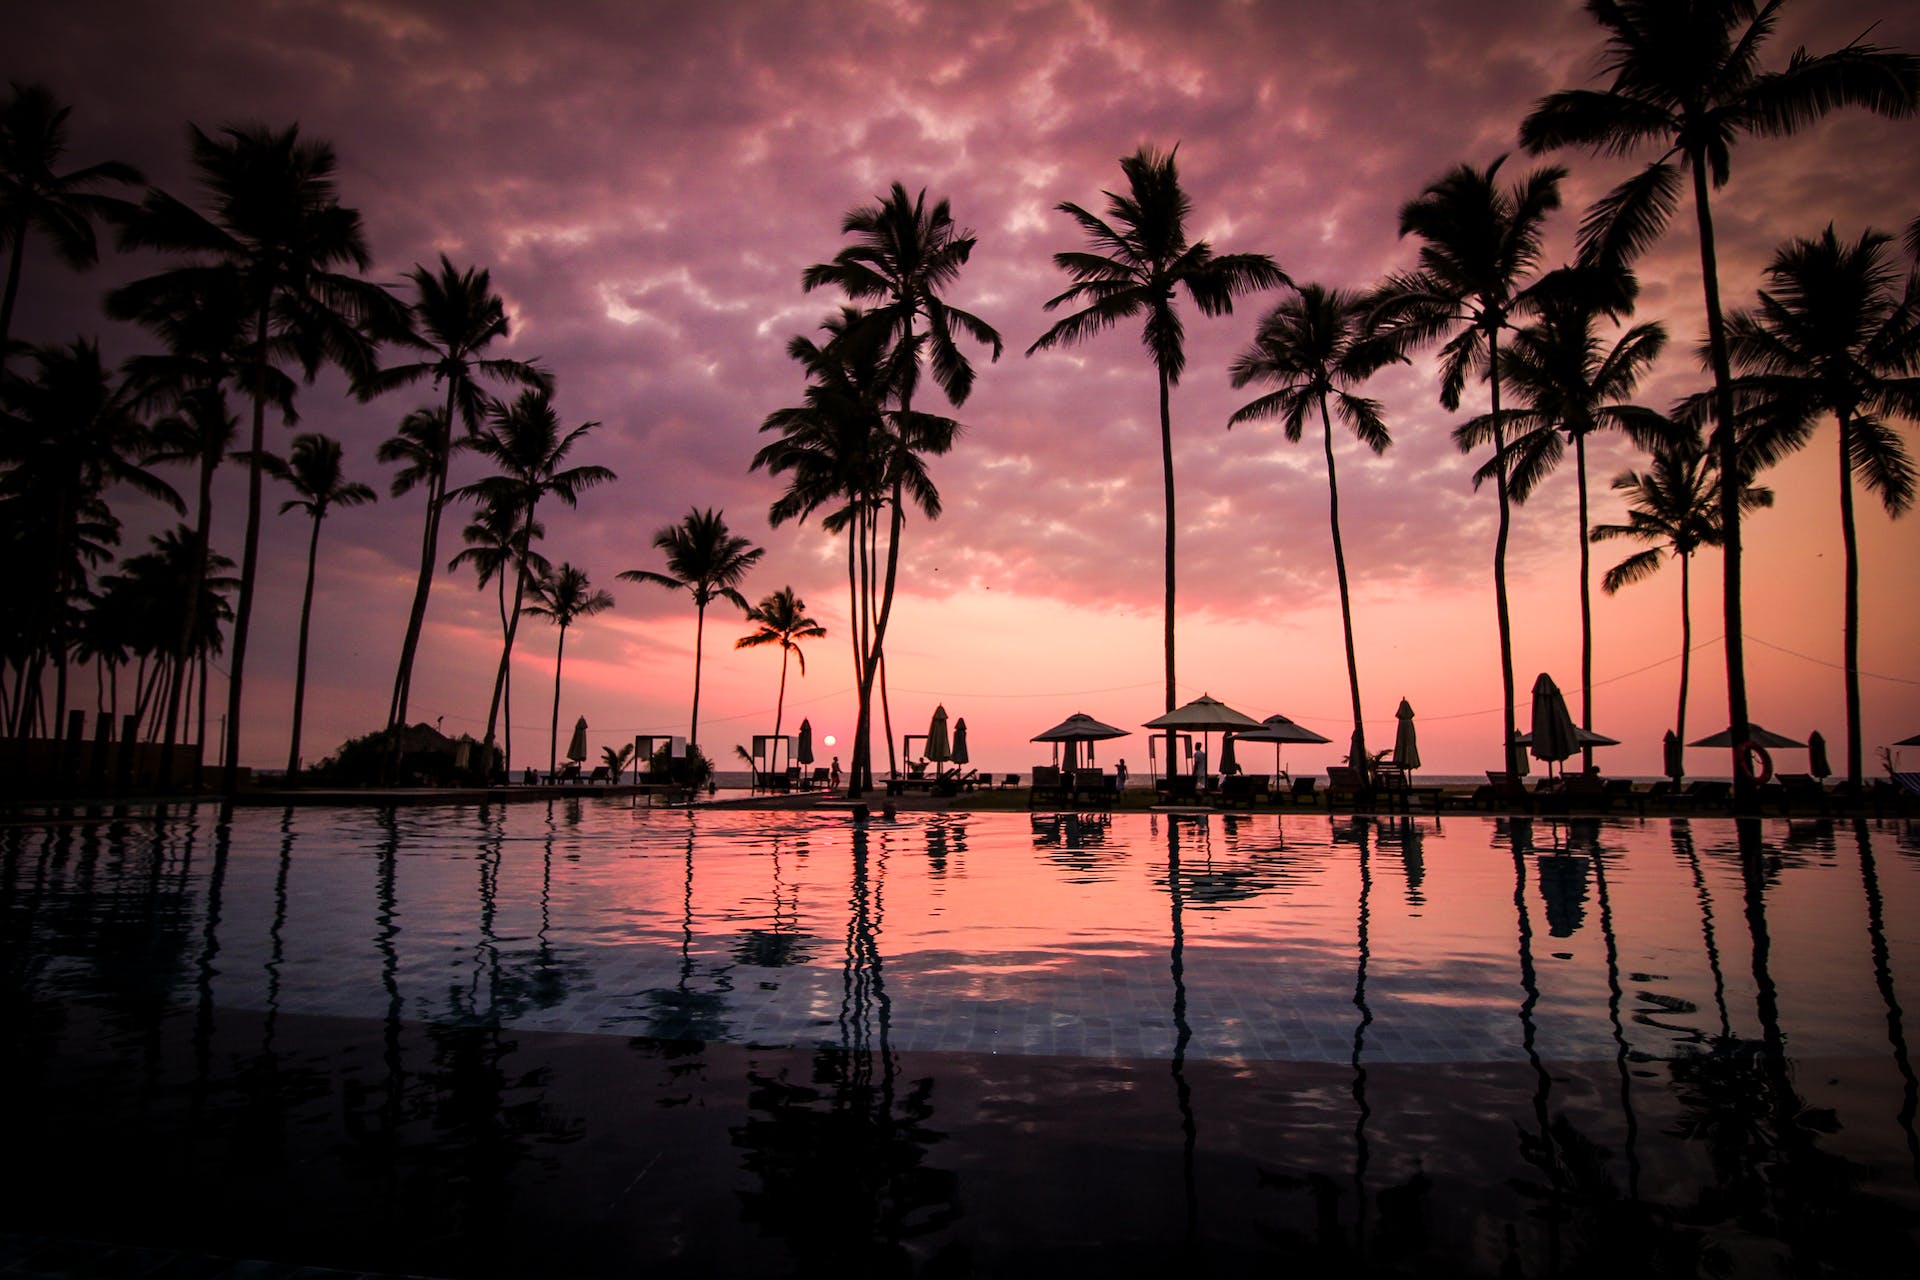 Resort after sunset | Source: Pexels